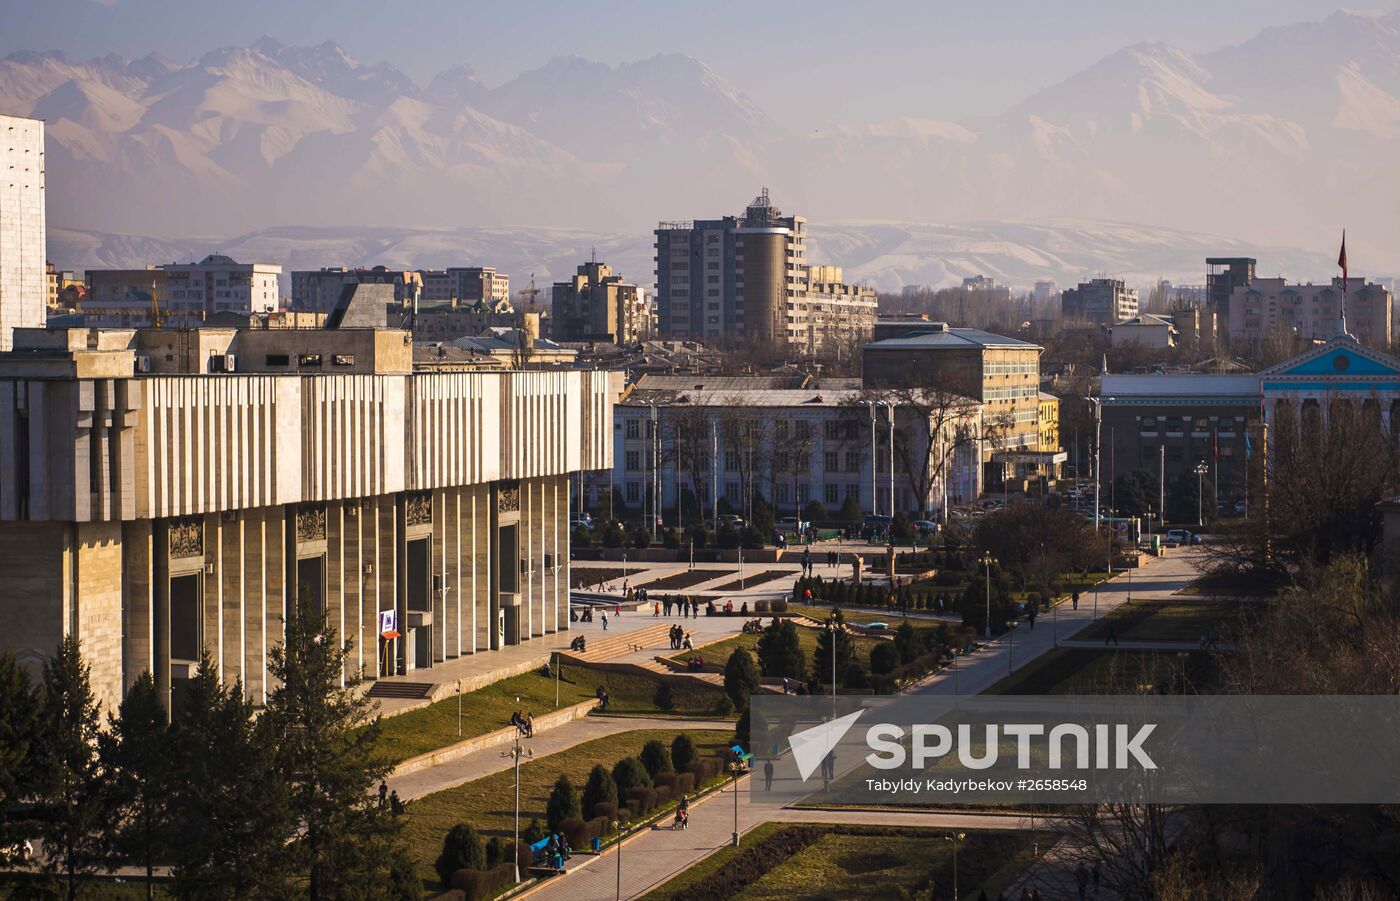 Cities of the world. Bishkek